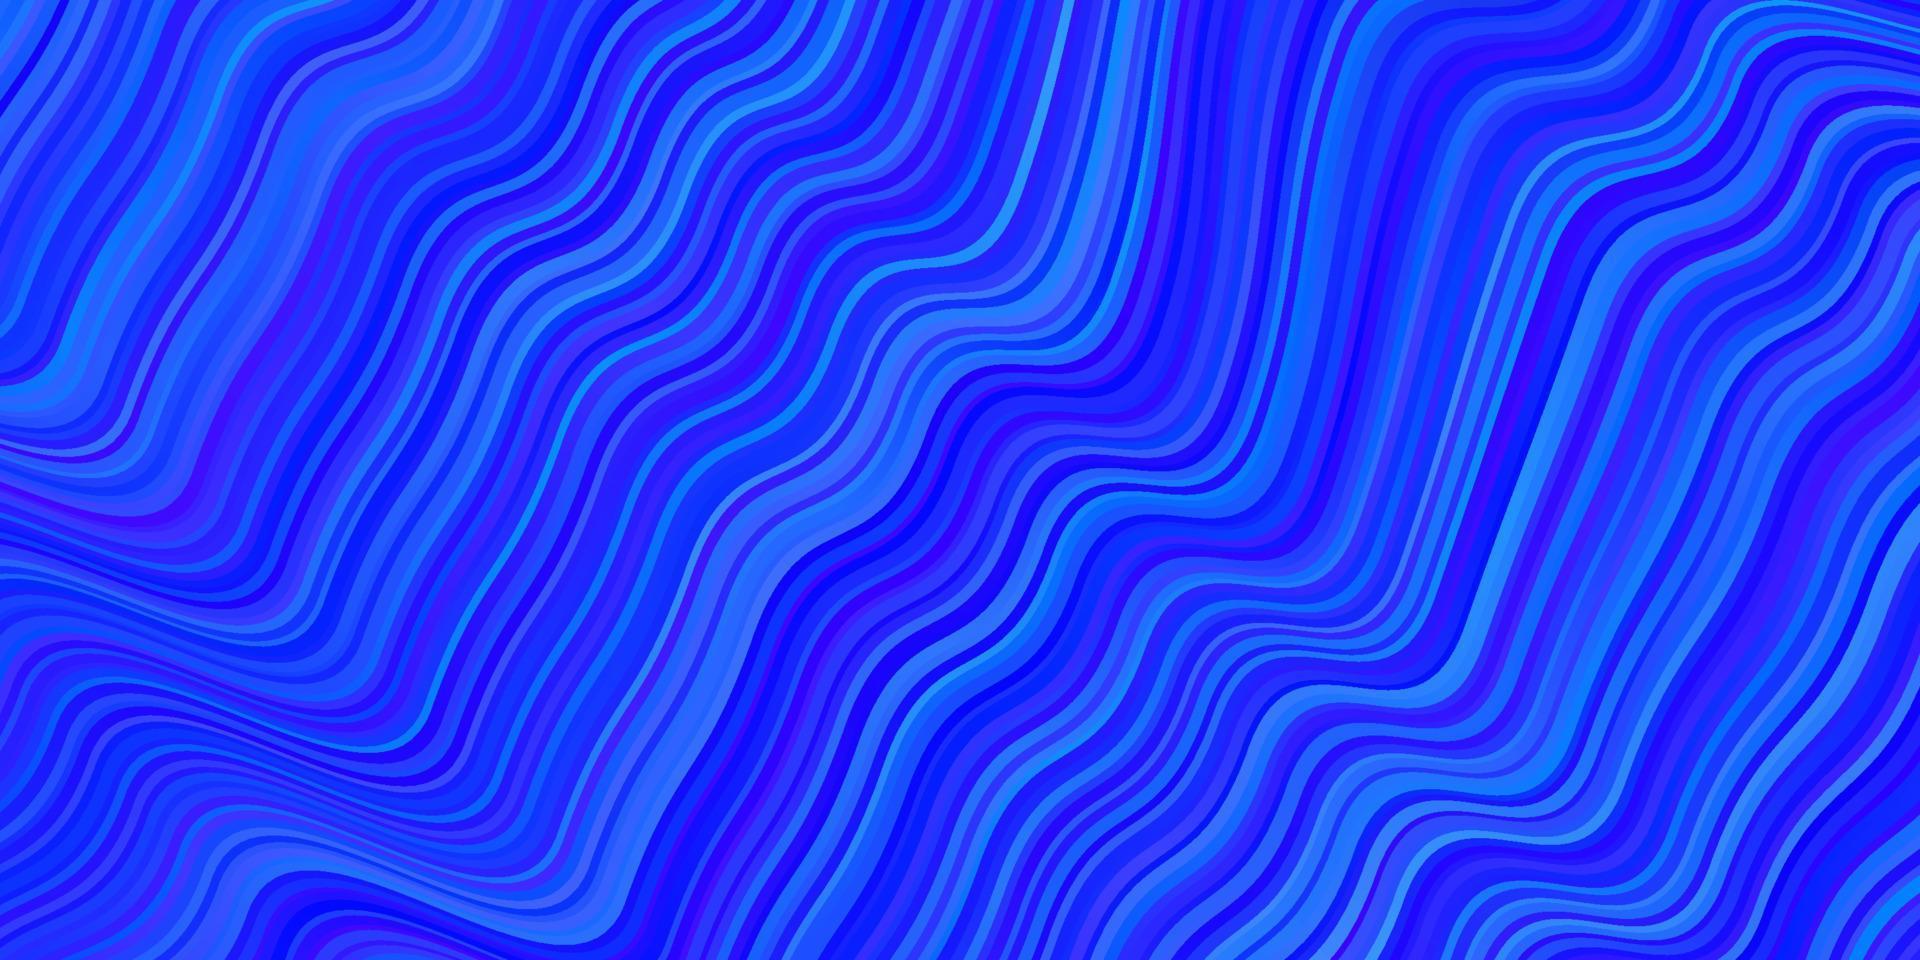 hellblaue Vektorschablone mit gebogenen Linien. vektor